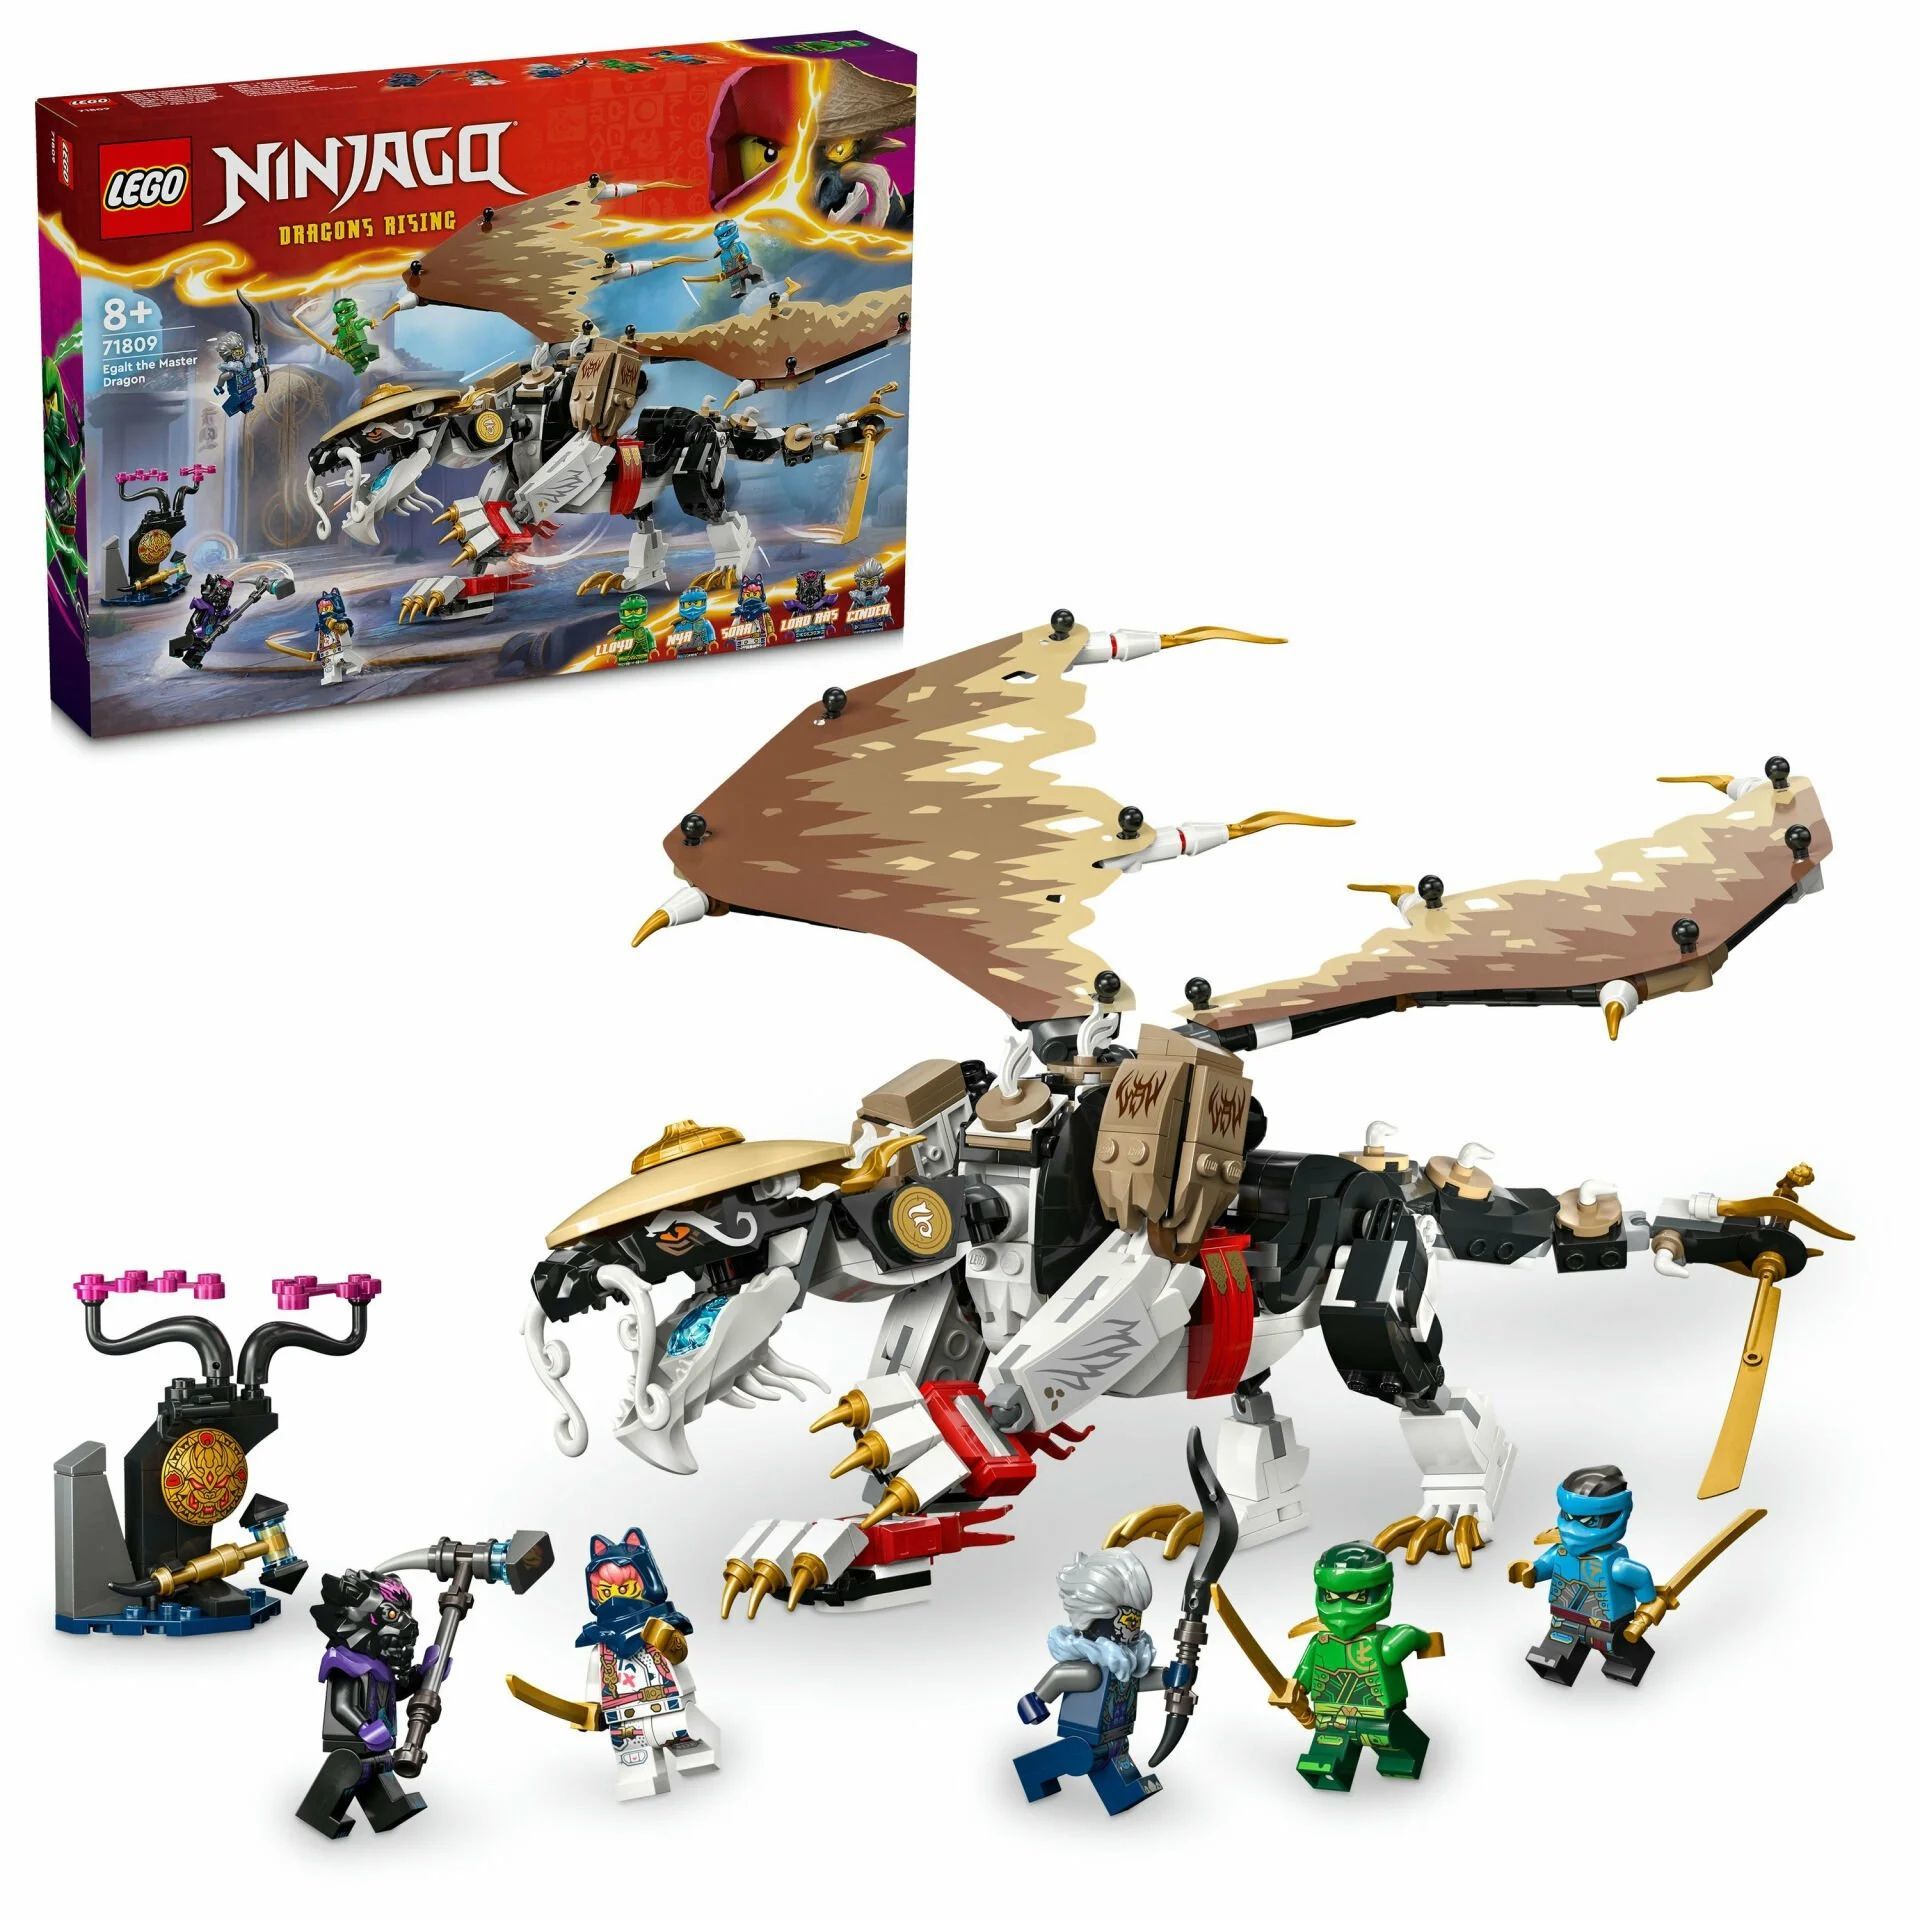 Lego Ninjago Egalt Usta Ejderha 71809